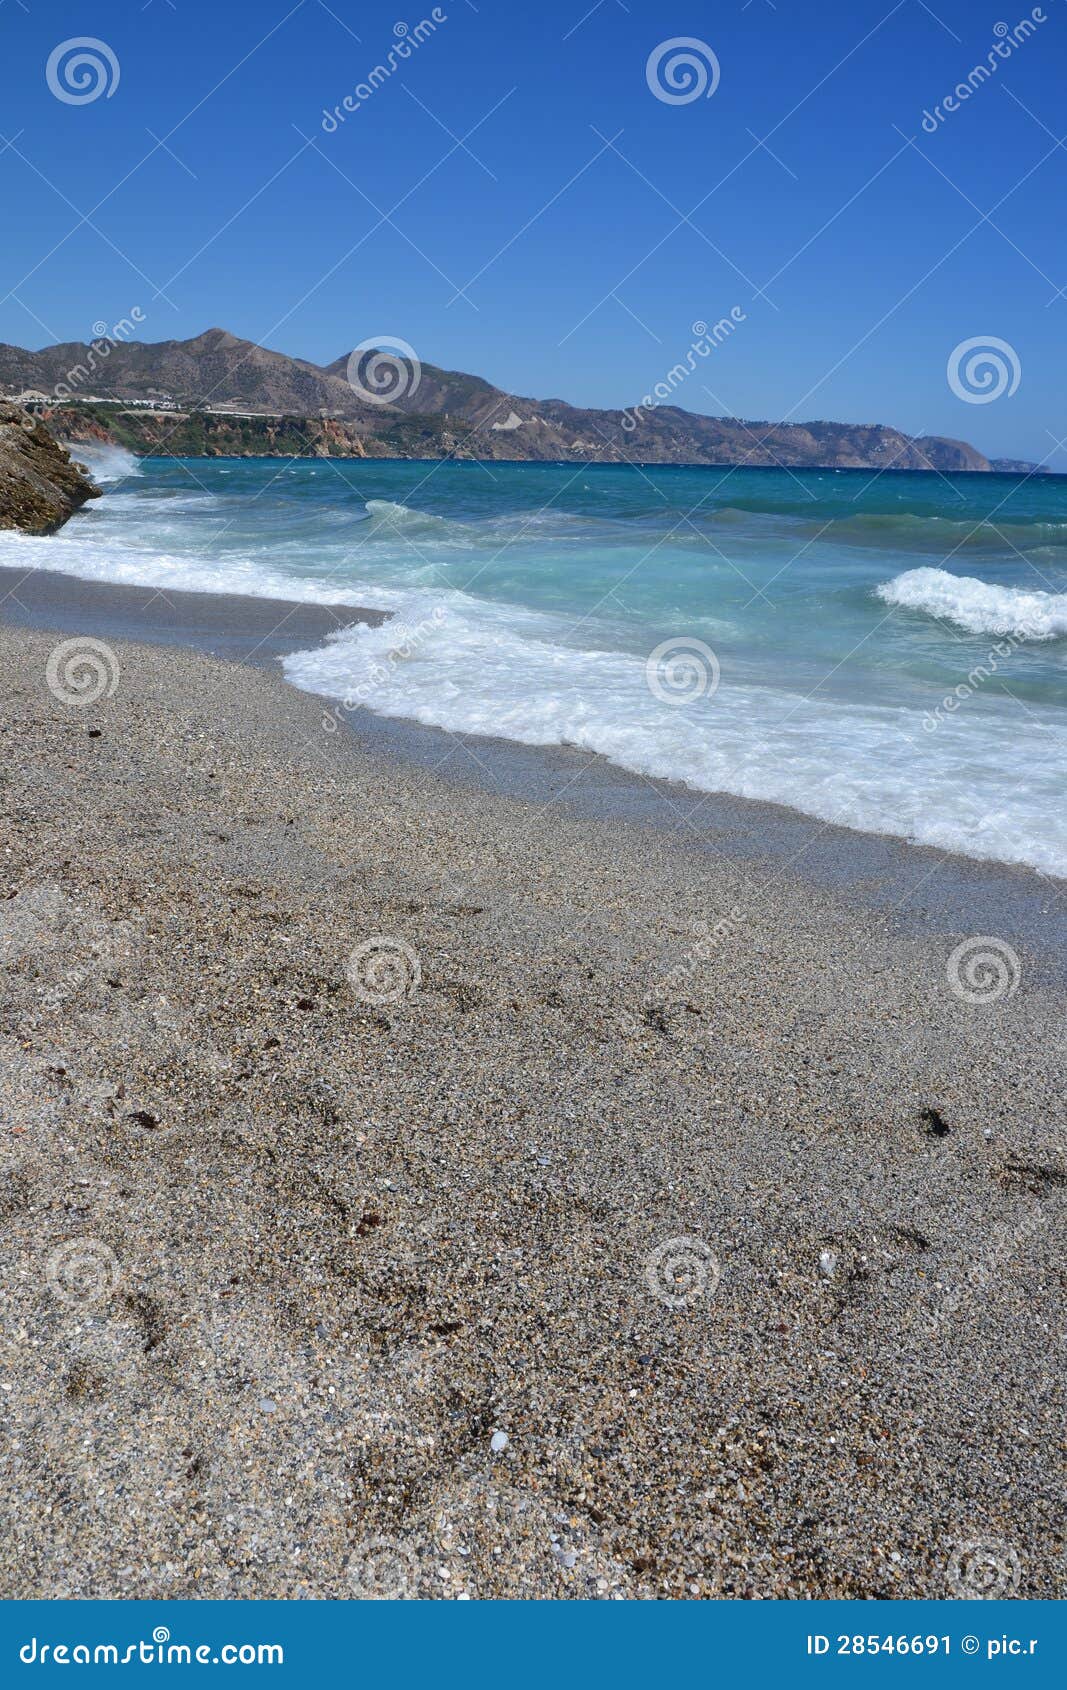 Beach in Costa Del Sol - Spain Stock Image - Image of destination ...